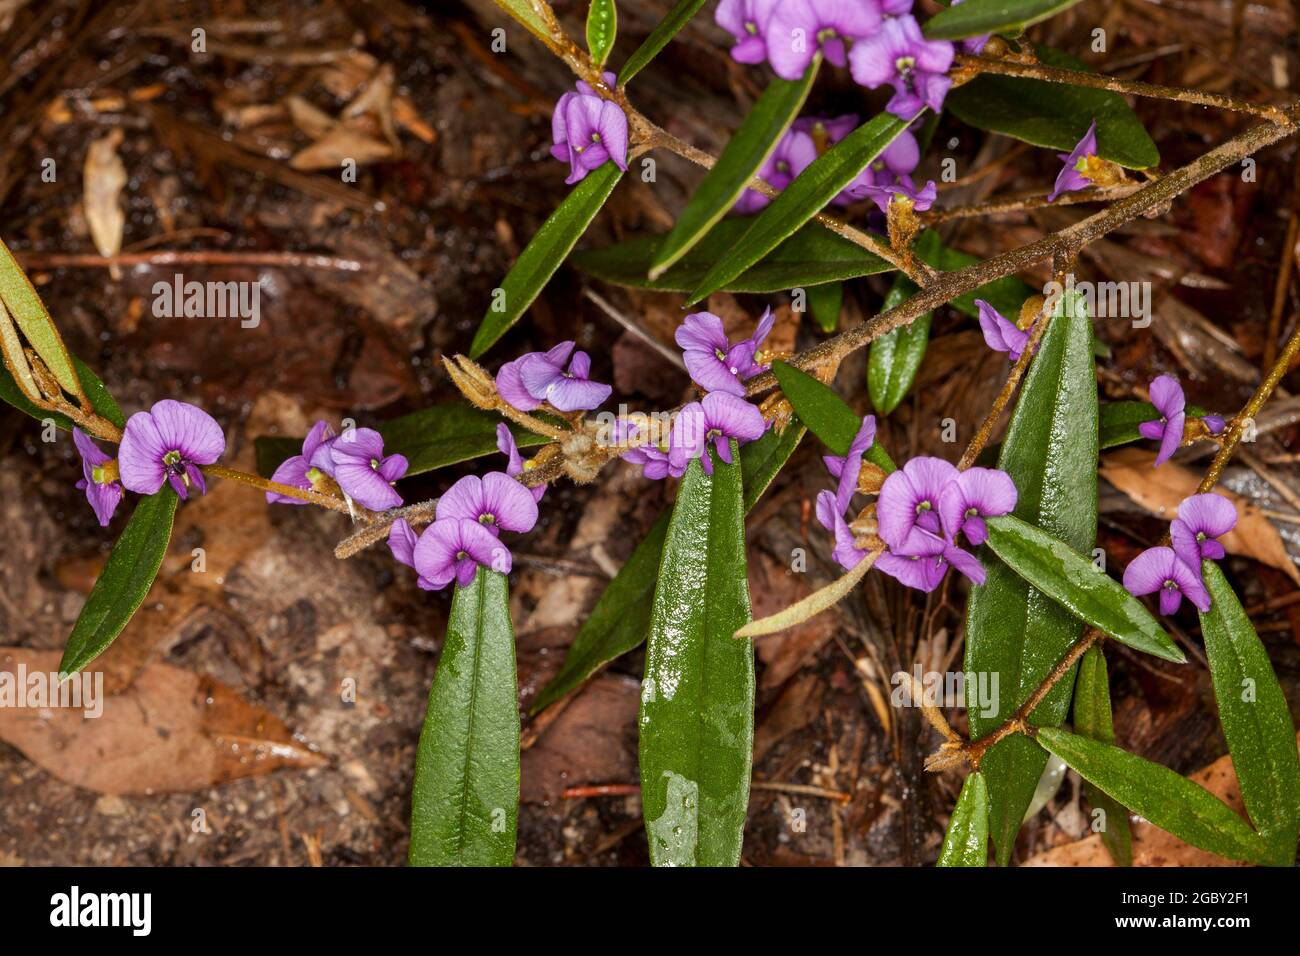 Bunte Wildblumen, leuchtend violette Blüten und dunkelgrüne Blätter von Hovea acutifolia, Purple Pea Bush, einem australischen einheimischen Strauch Stockfoto